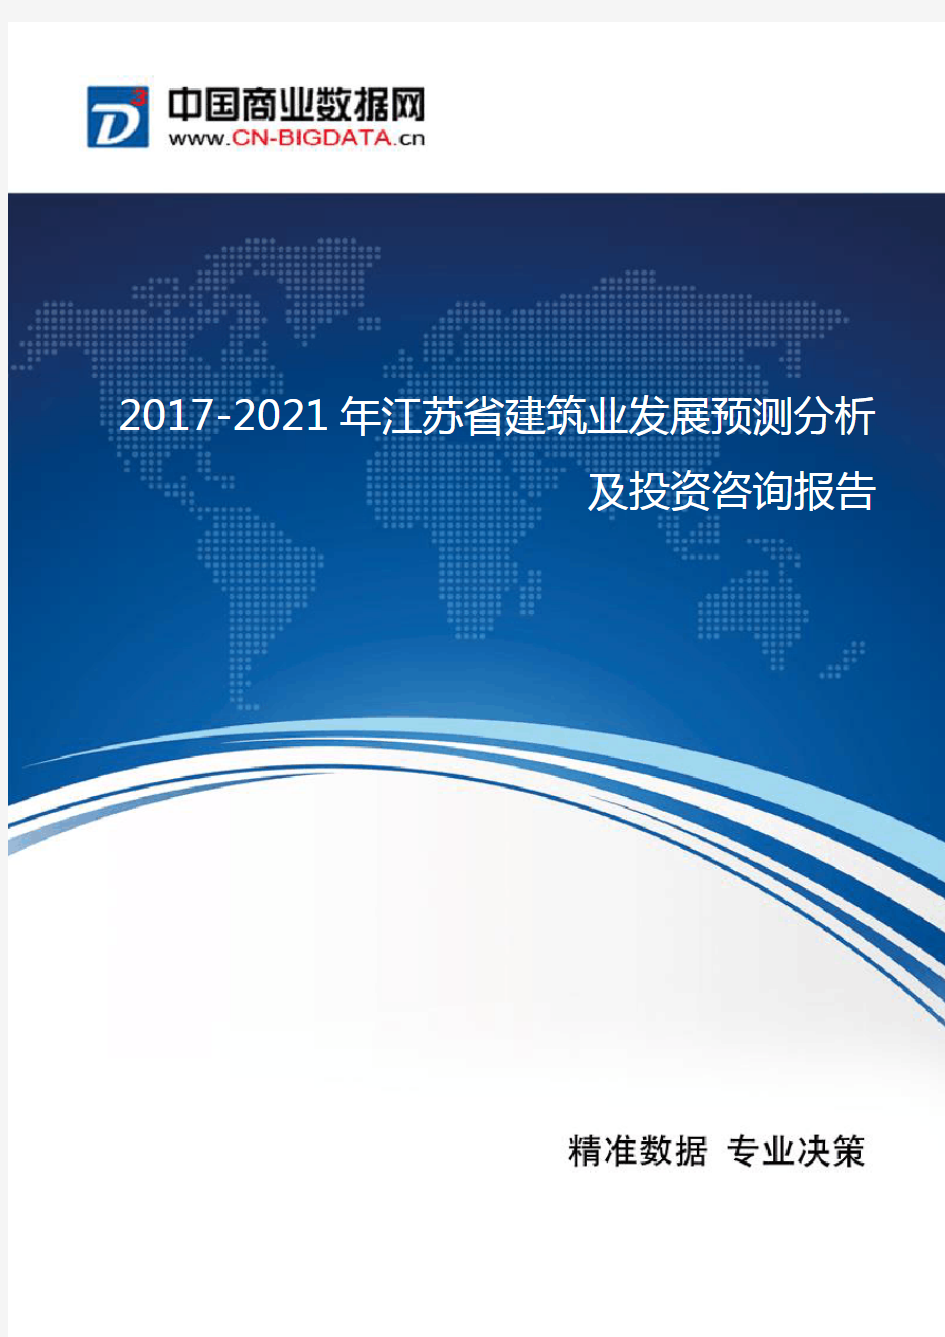 2017-2021年江苏省建筑业发展预测分析及投资咨询报告